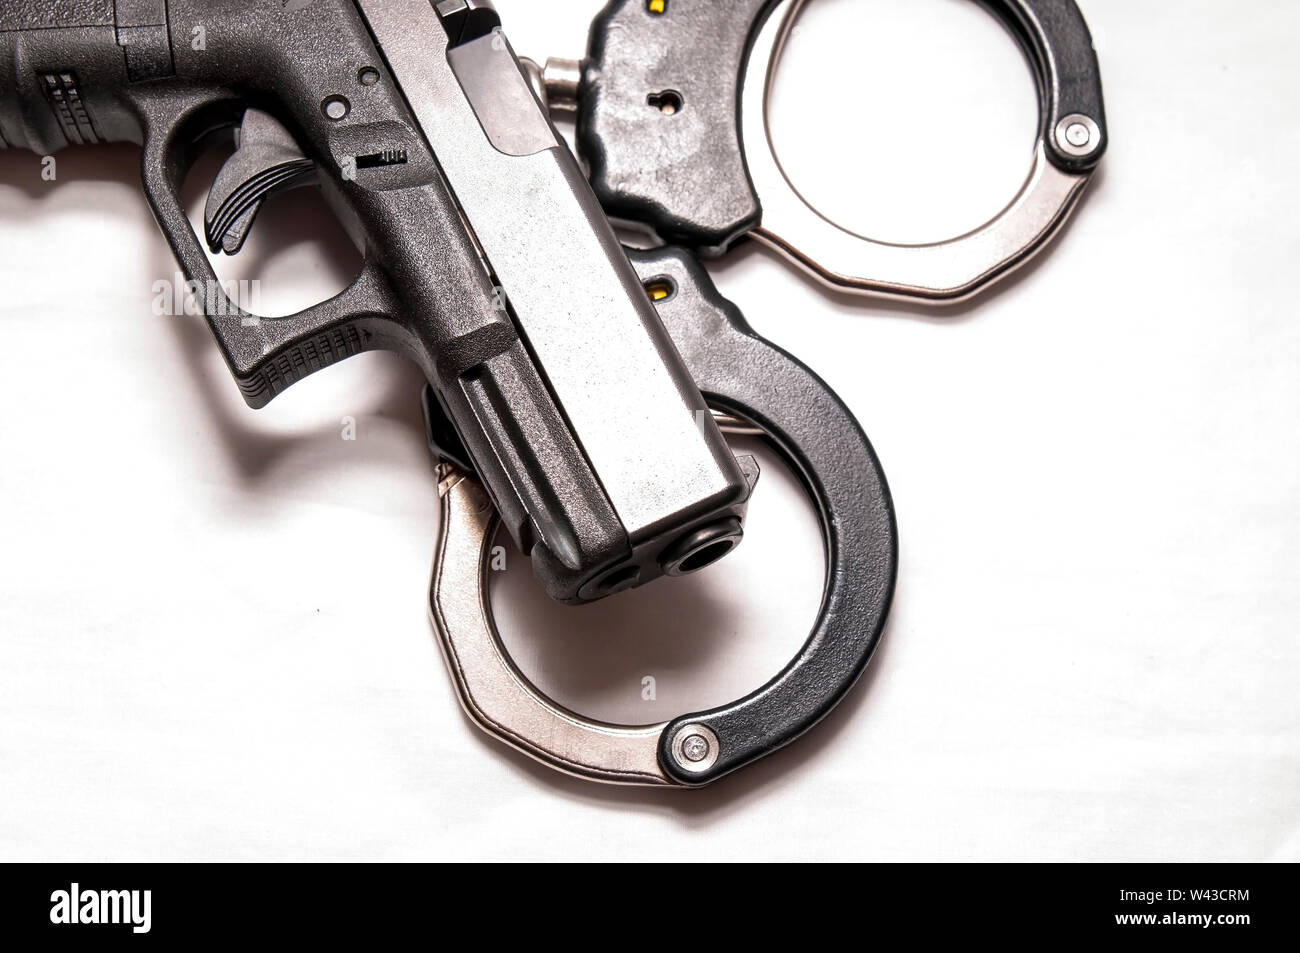 Un nero 9mm pistola sulla sommità di una serie di colori nero e argento manette su sfondo bianco Foto Stock